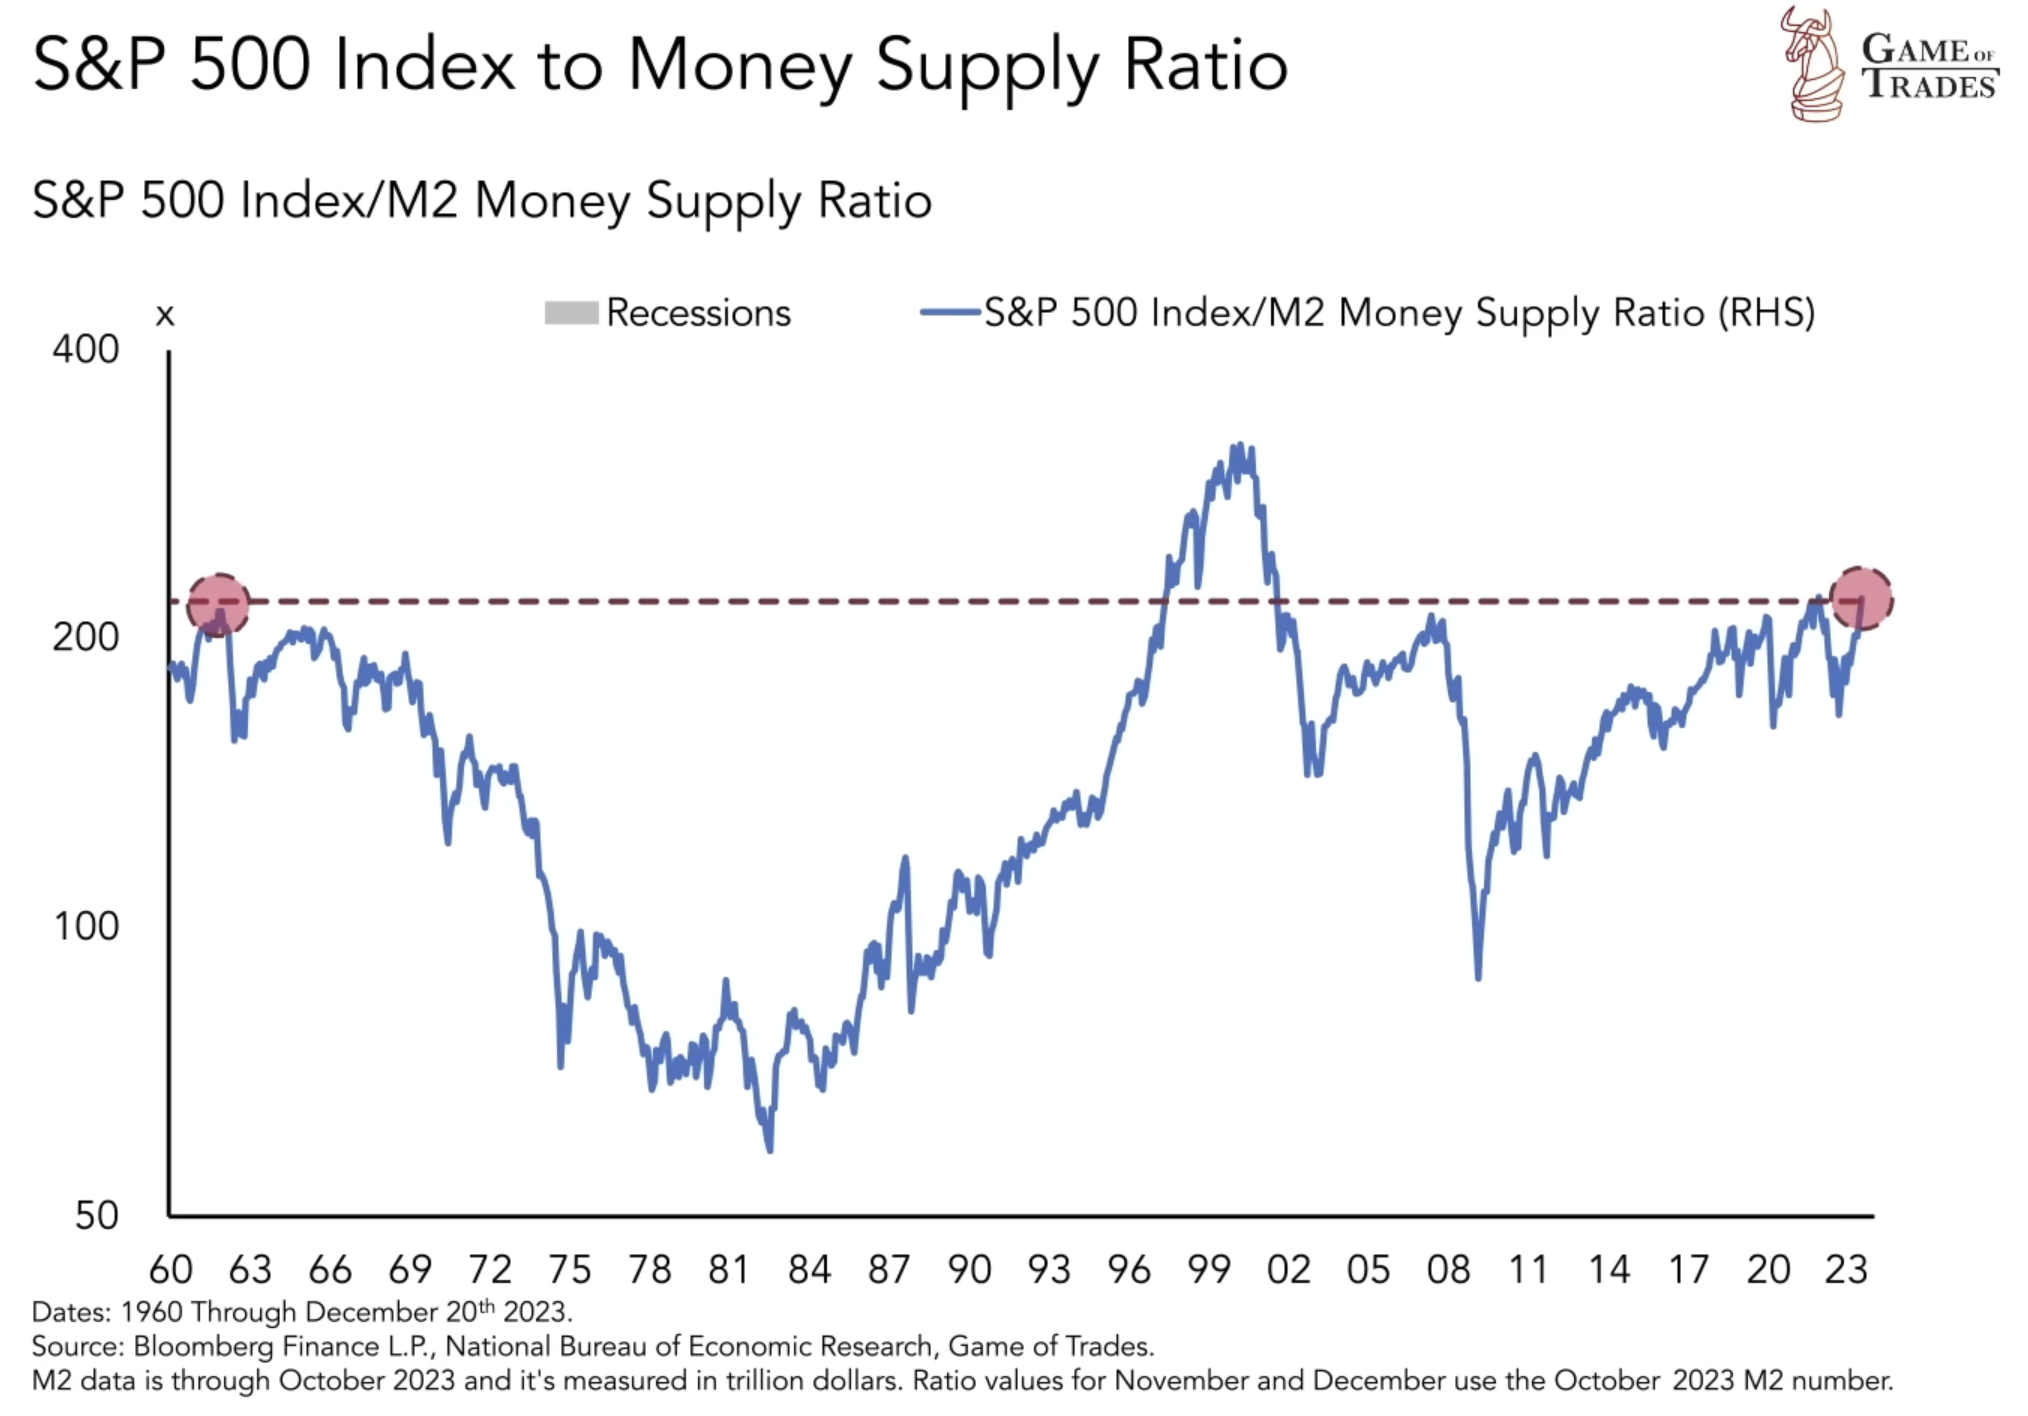 S&P 500 Index to money supply ratio